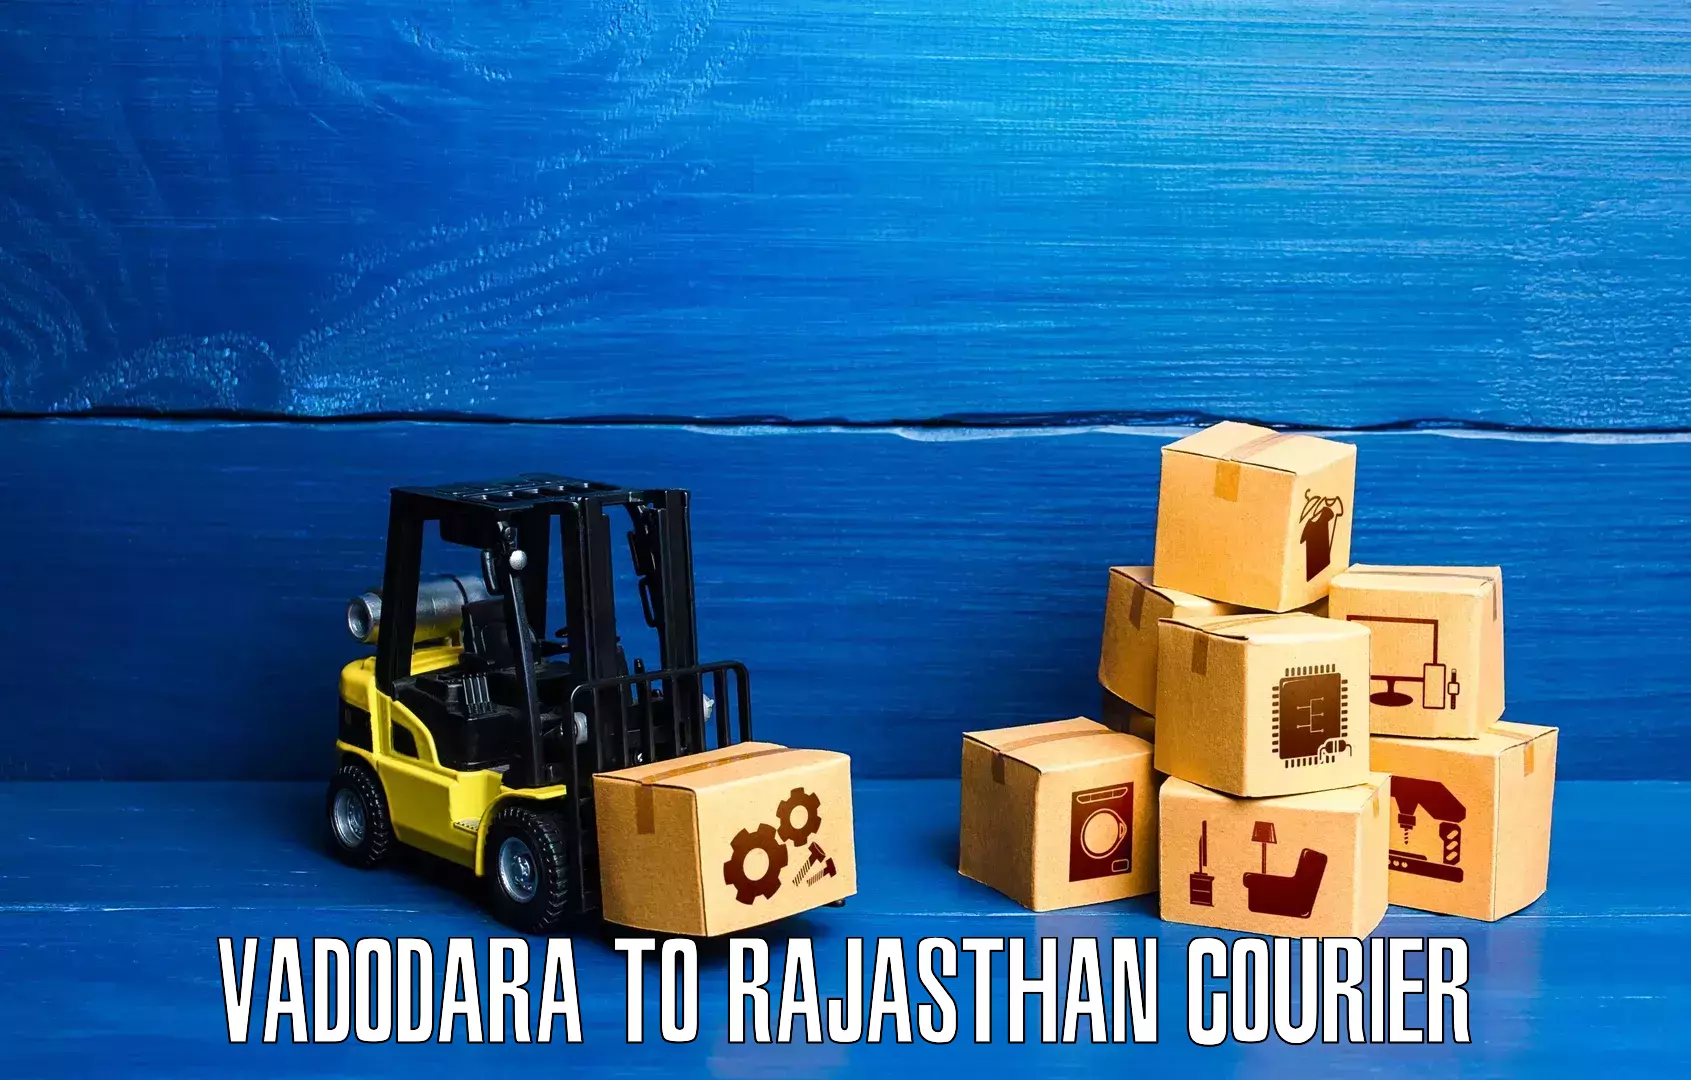 Courier service comparison Vadodara to Nasirabad